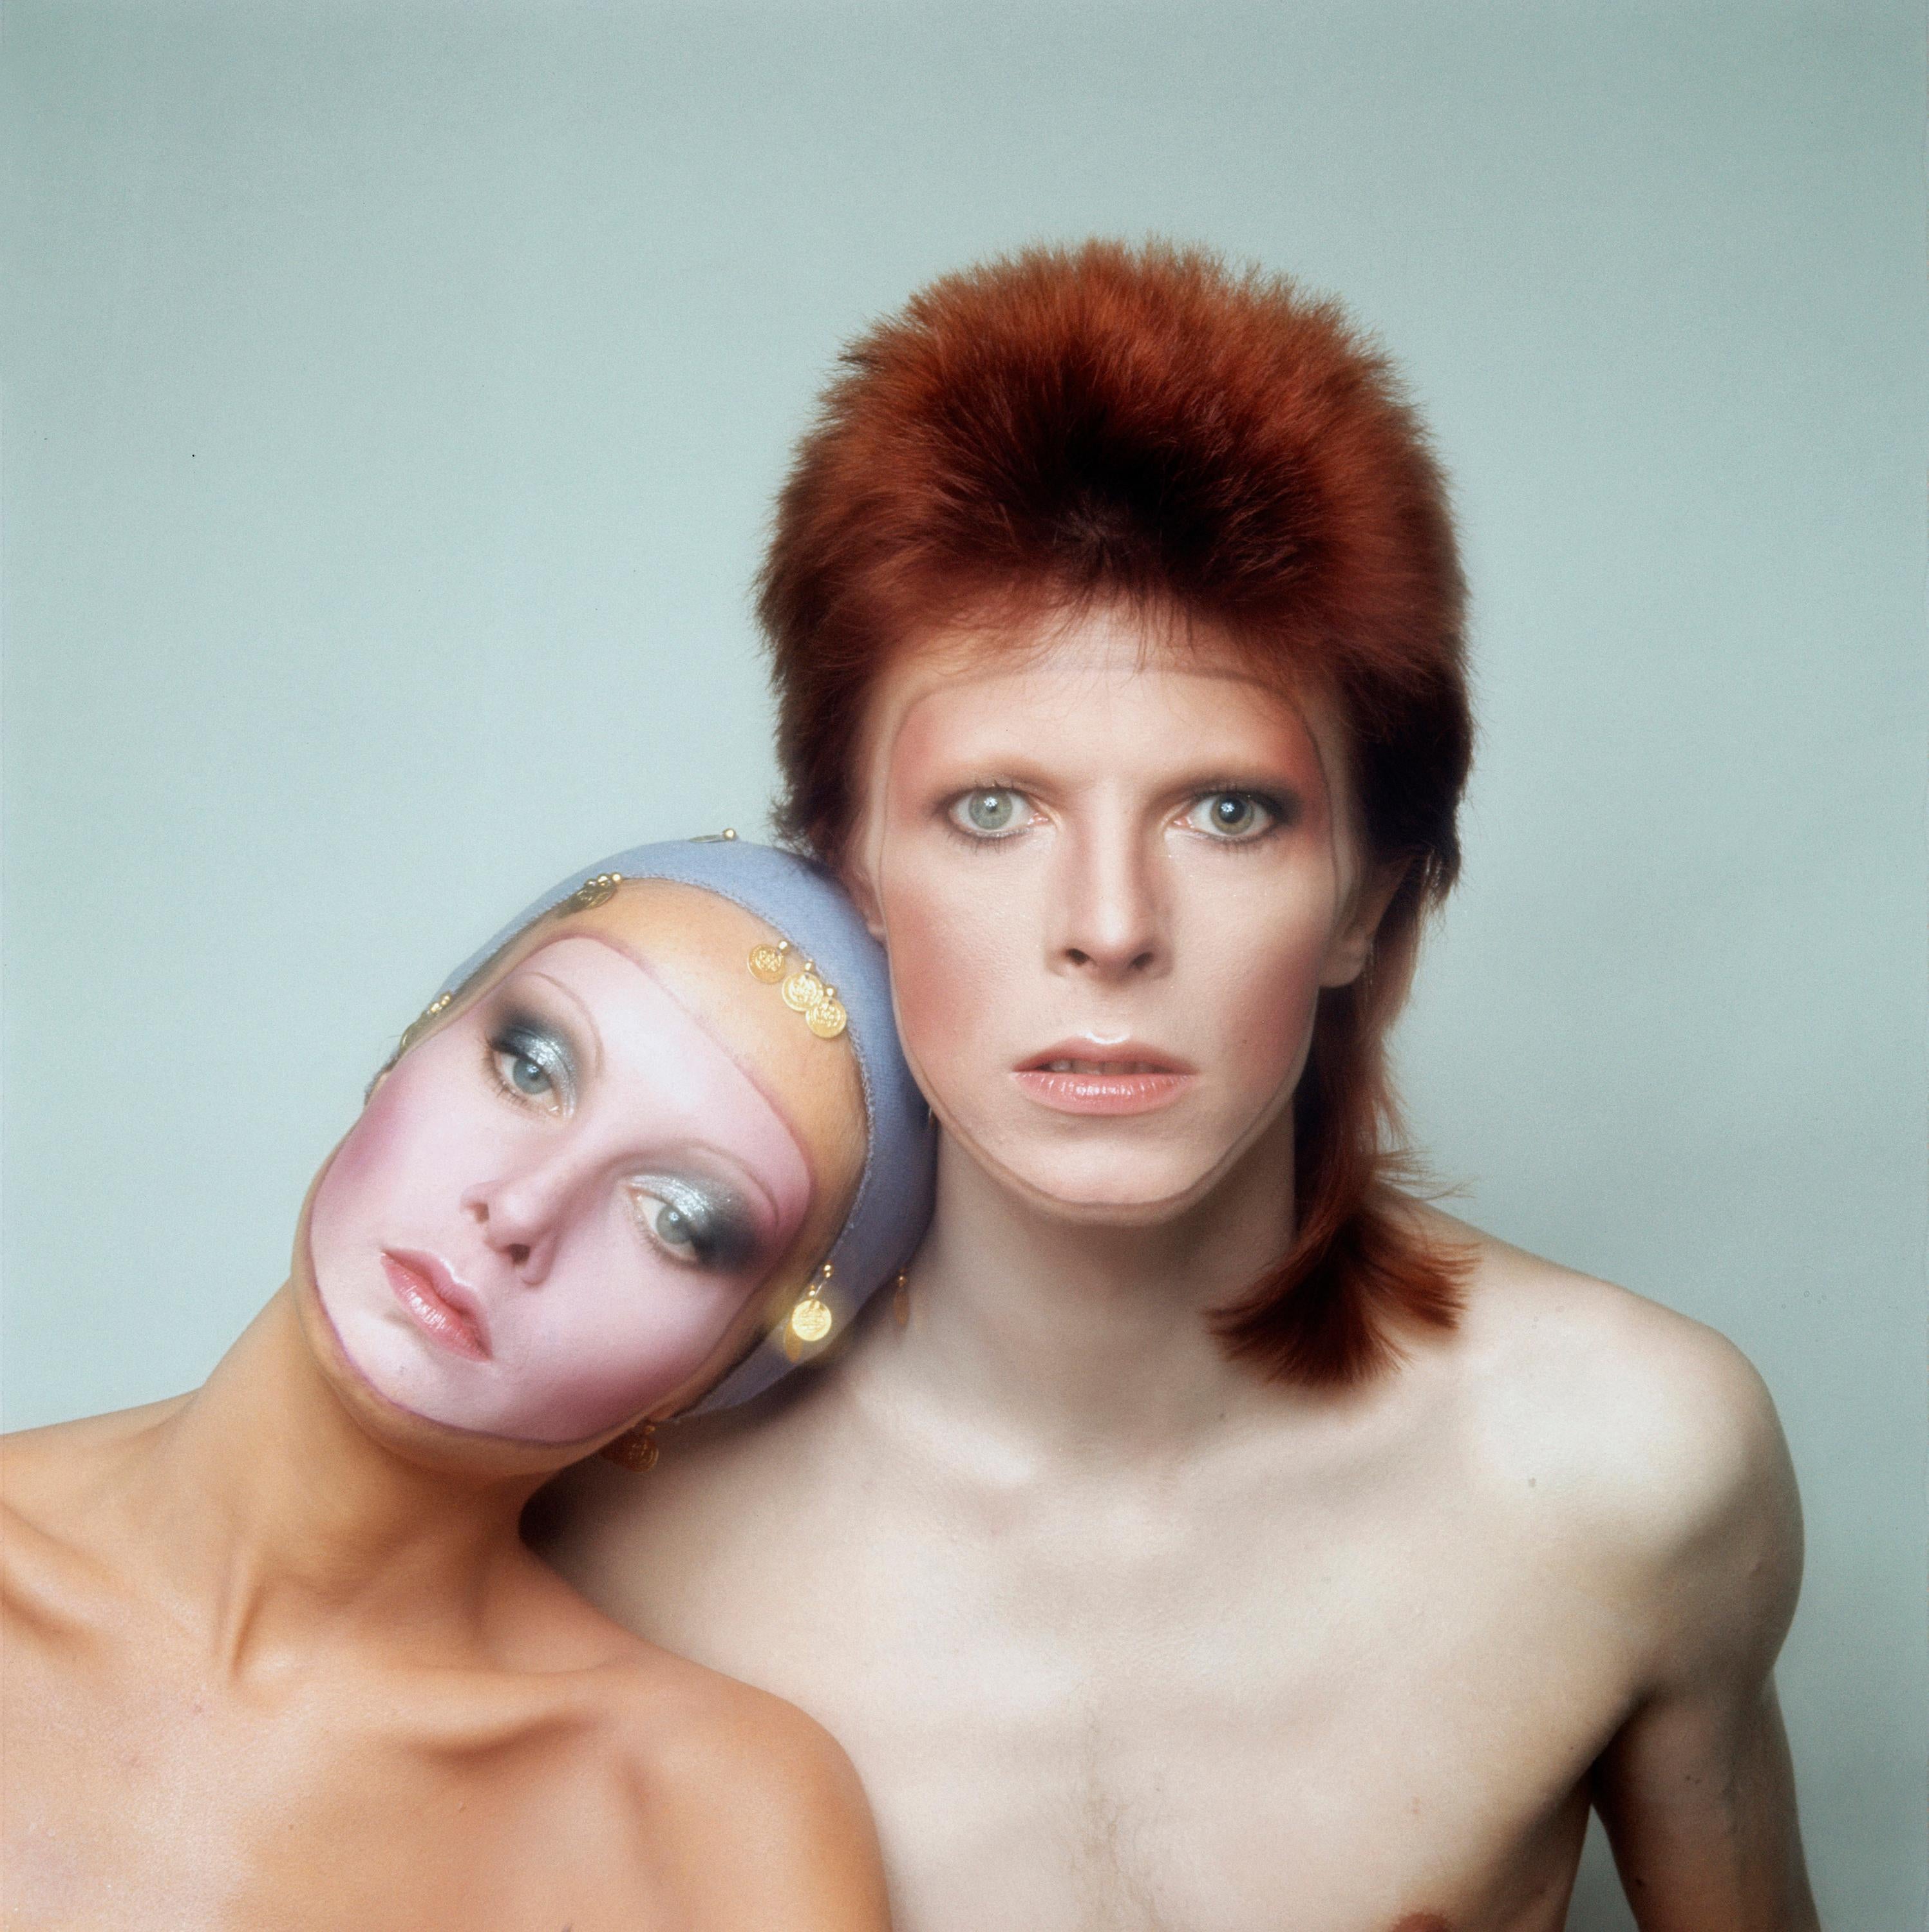 Justin de Villaneuve Color Photograph - David Bowie & Twiggy Pin-Ups album cover, 1973 by Justin de Villeneuve